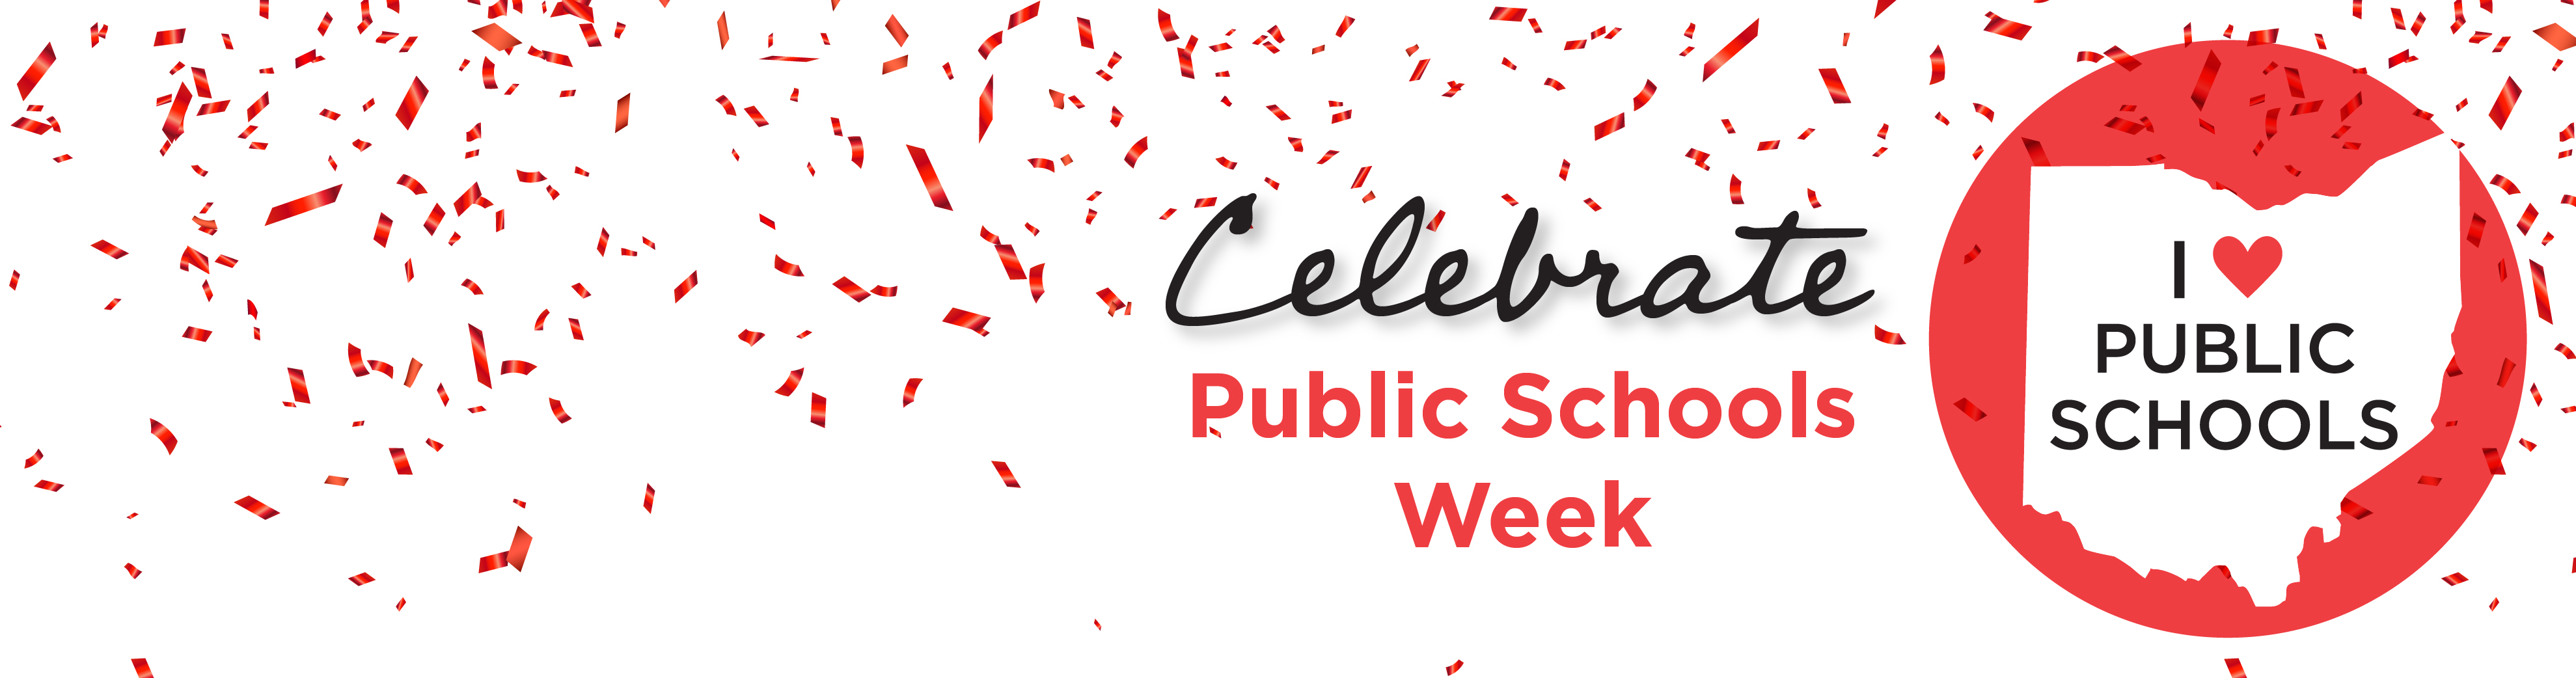 Celebrate Public Schools Week